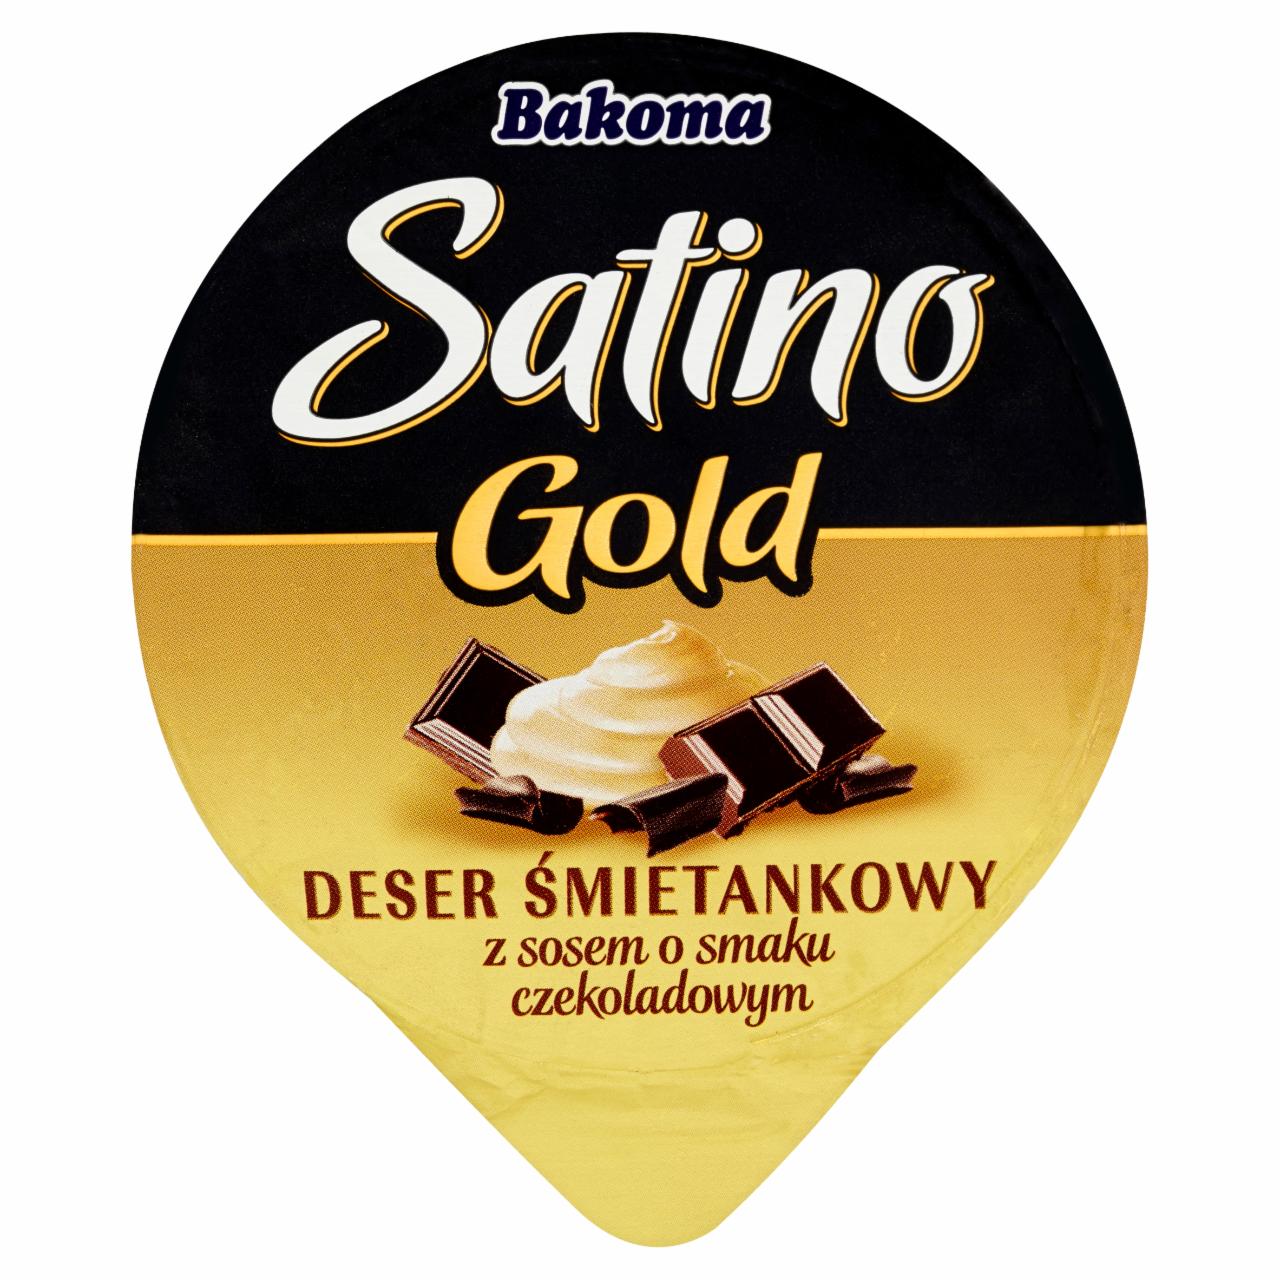 Zdjęcia - Bakoma Satino Gold Deser śmietankowy z sosem o smaku czekoladowym 135 g